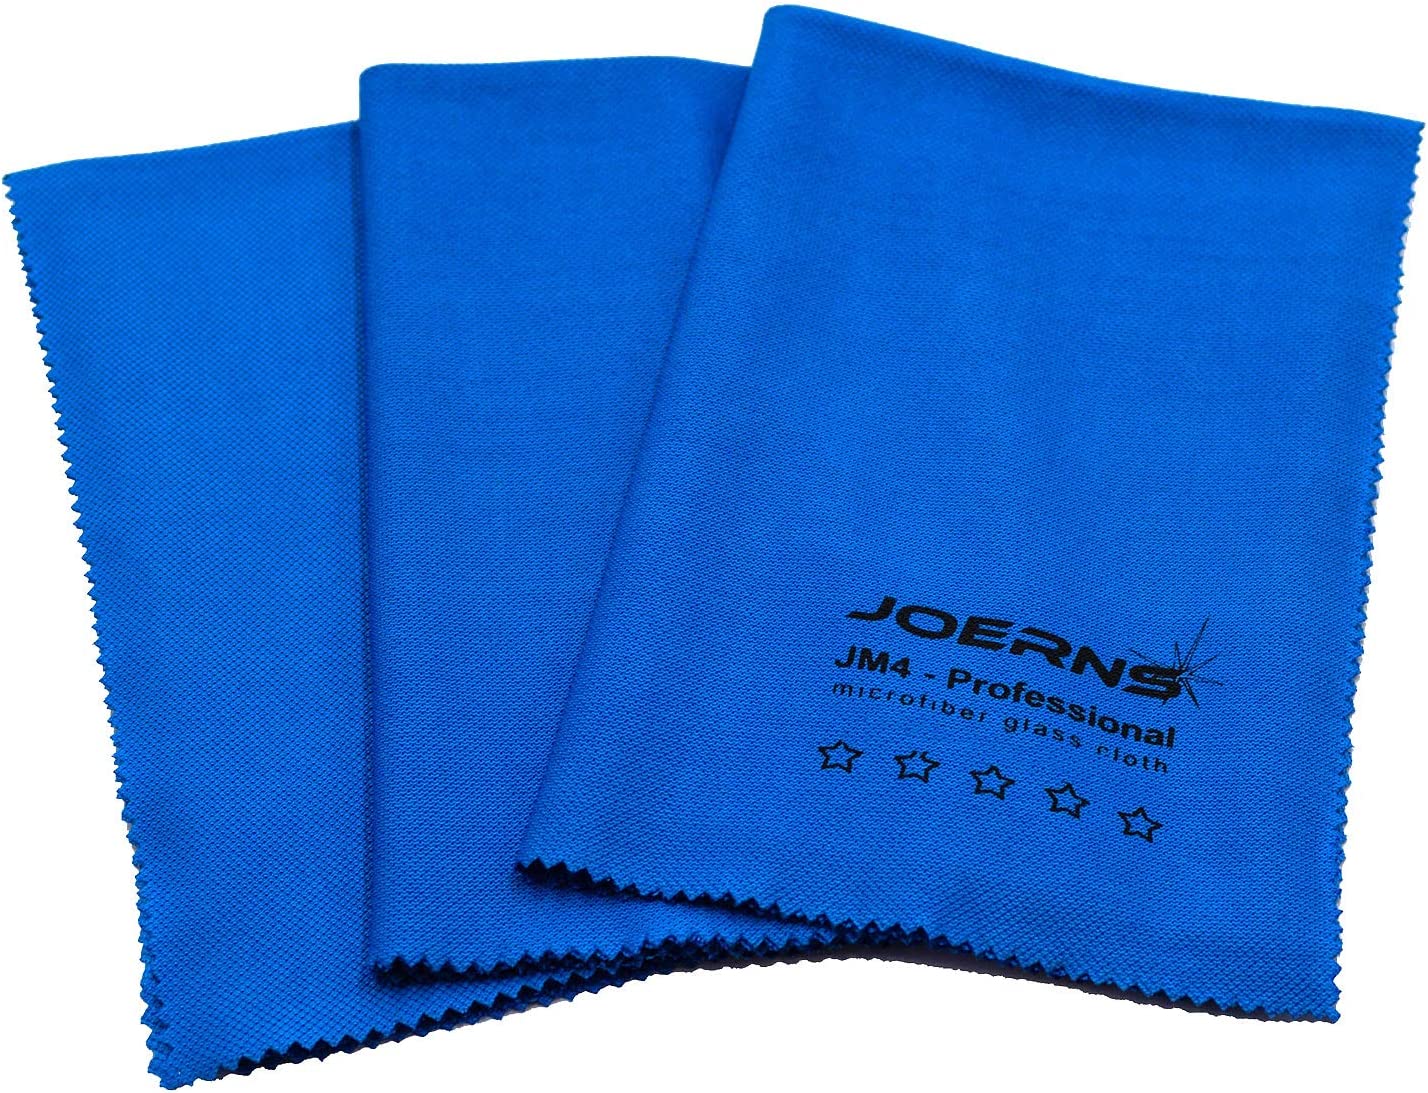 JM4 10er-Pack Profi-Reinigungstuch Microfasertuch für alle glatten Oberflächen Glastuch 